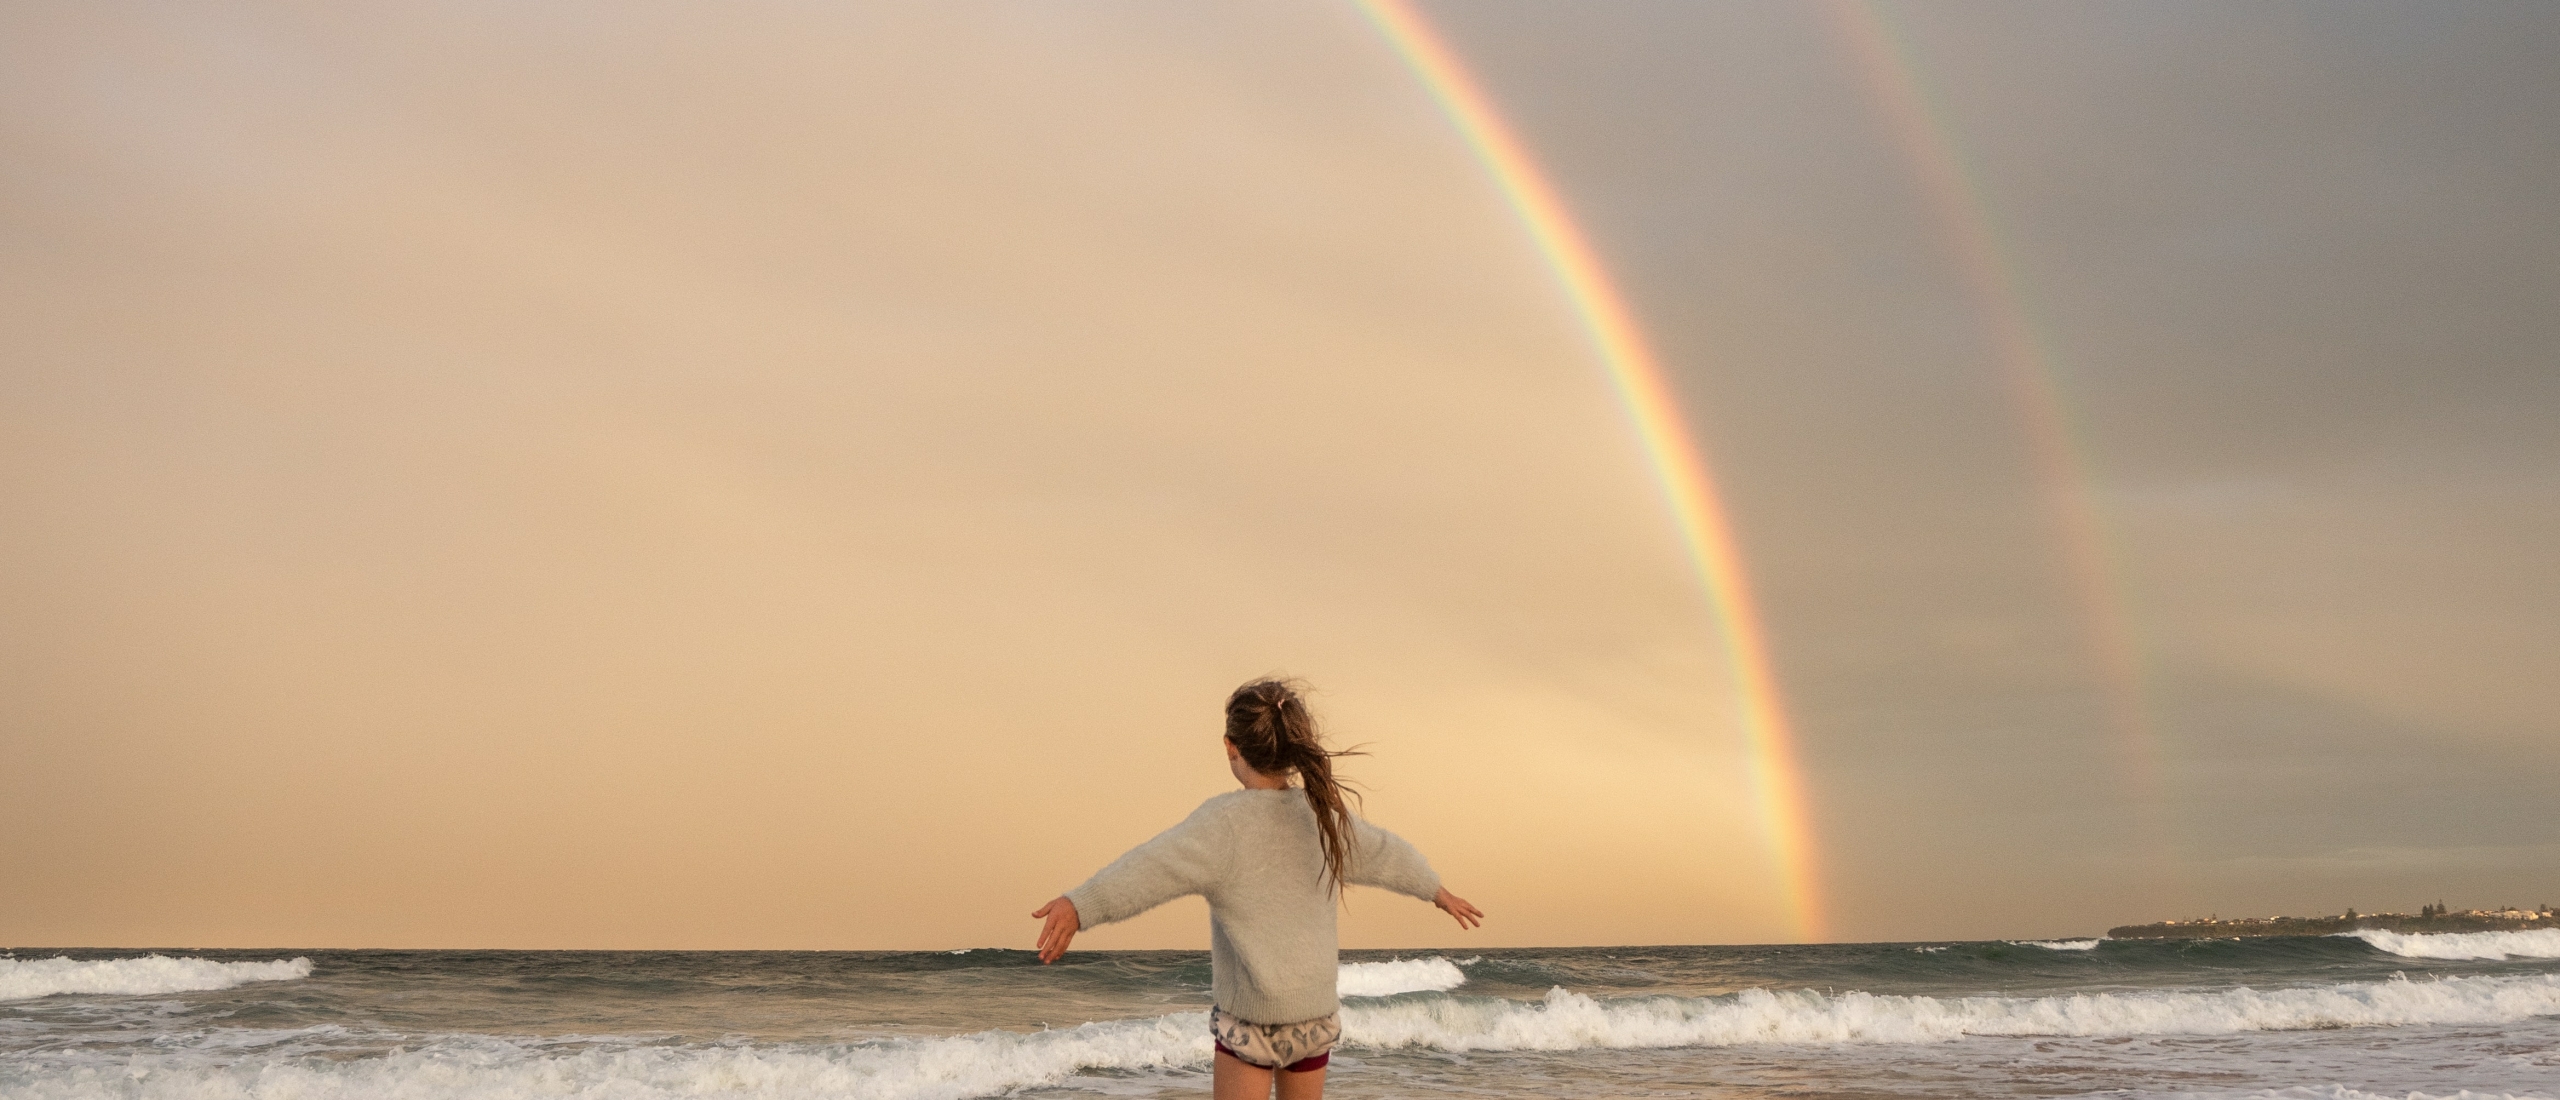 Kind op strand in regenboog aura